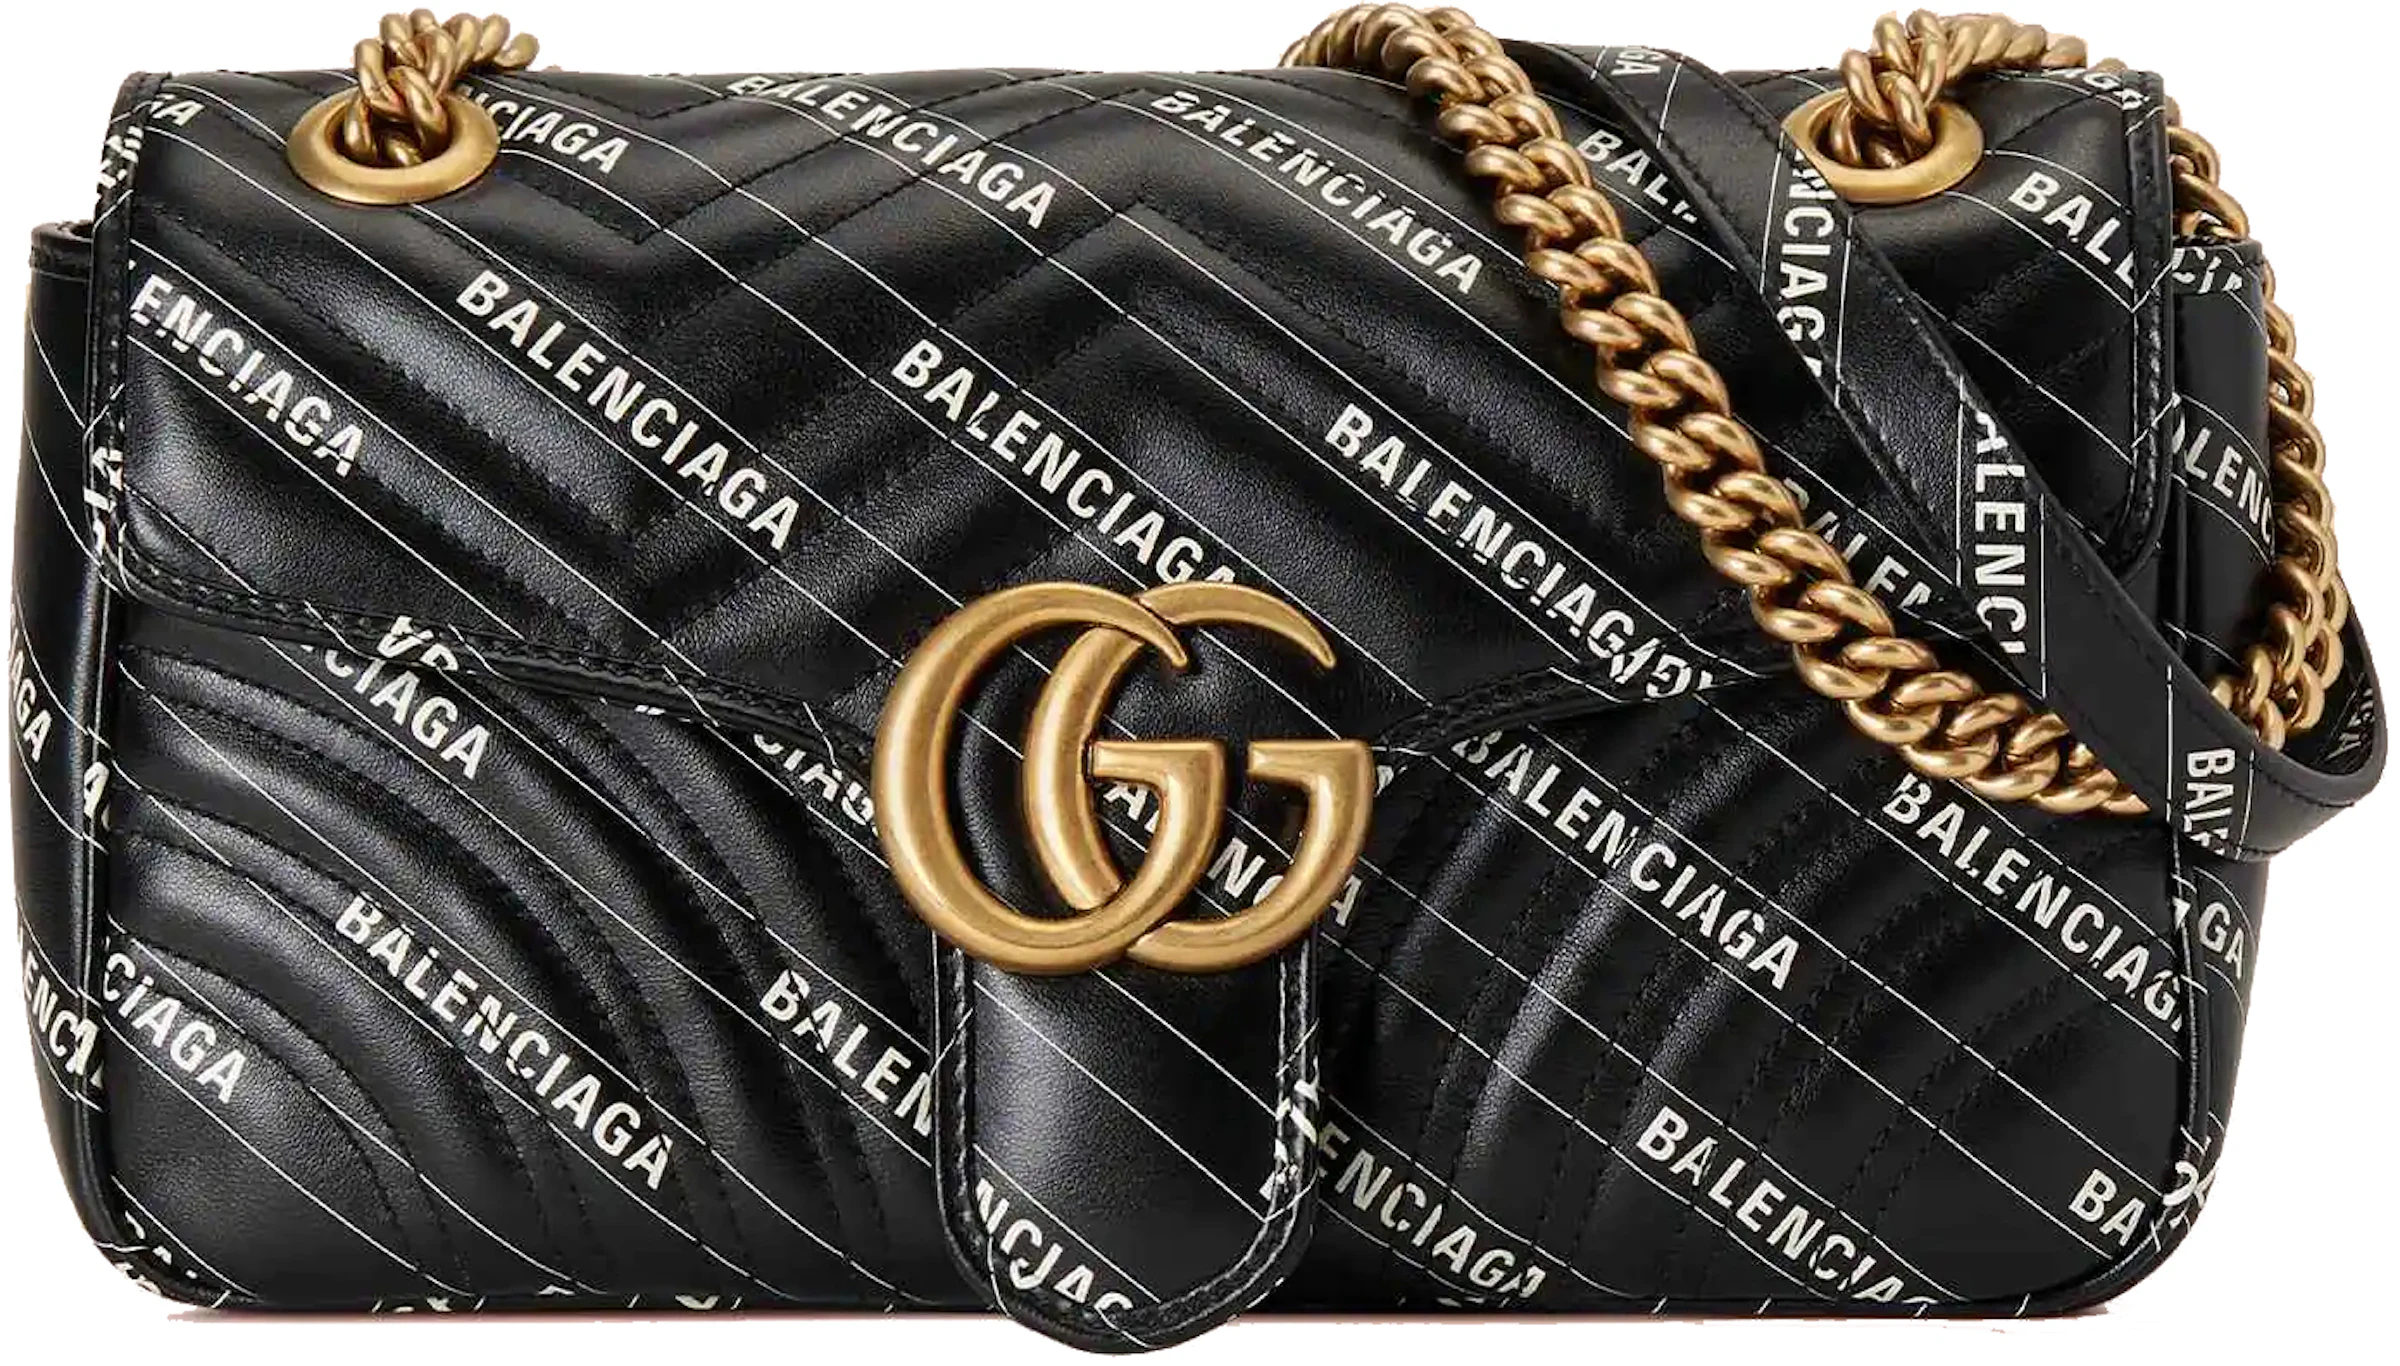 Gucci x Balenciaga The Hacker Project Small GG Marmont Bag Black in ...